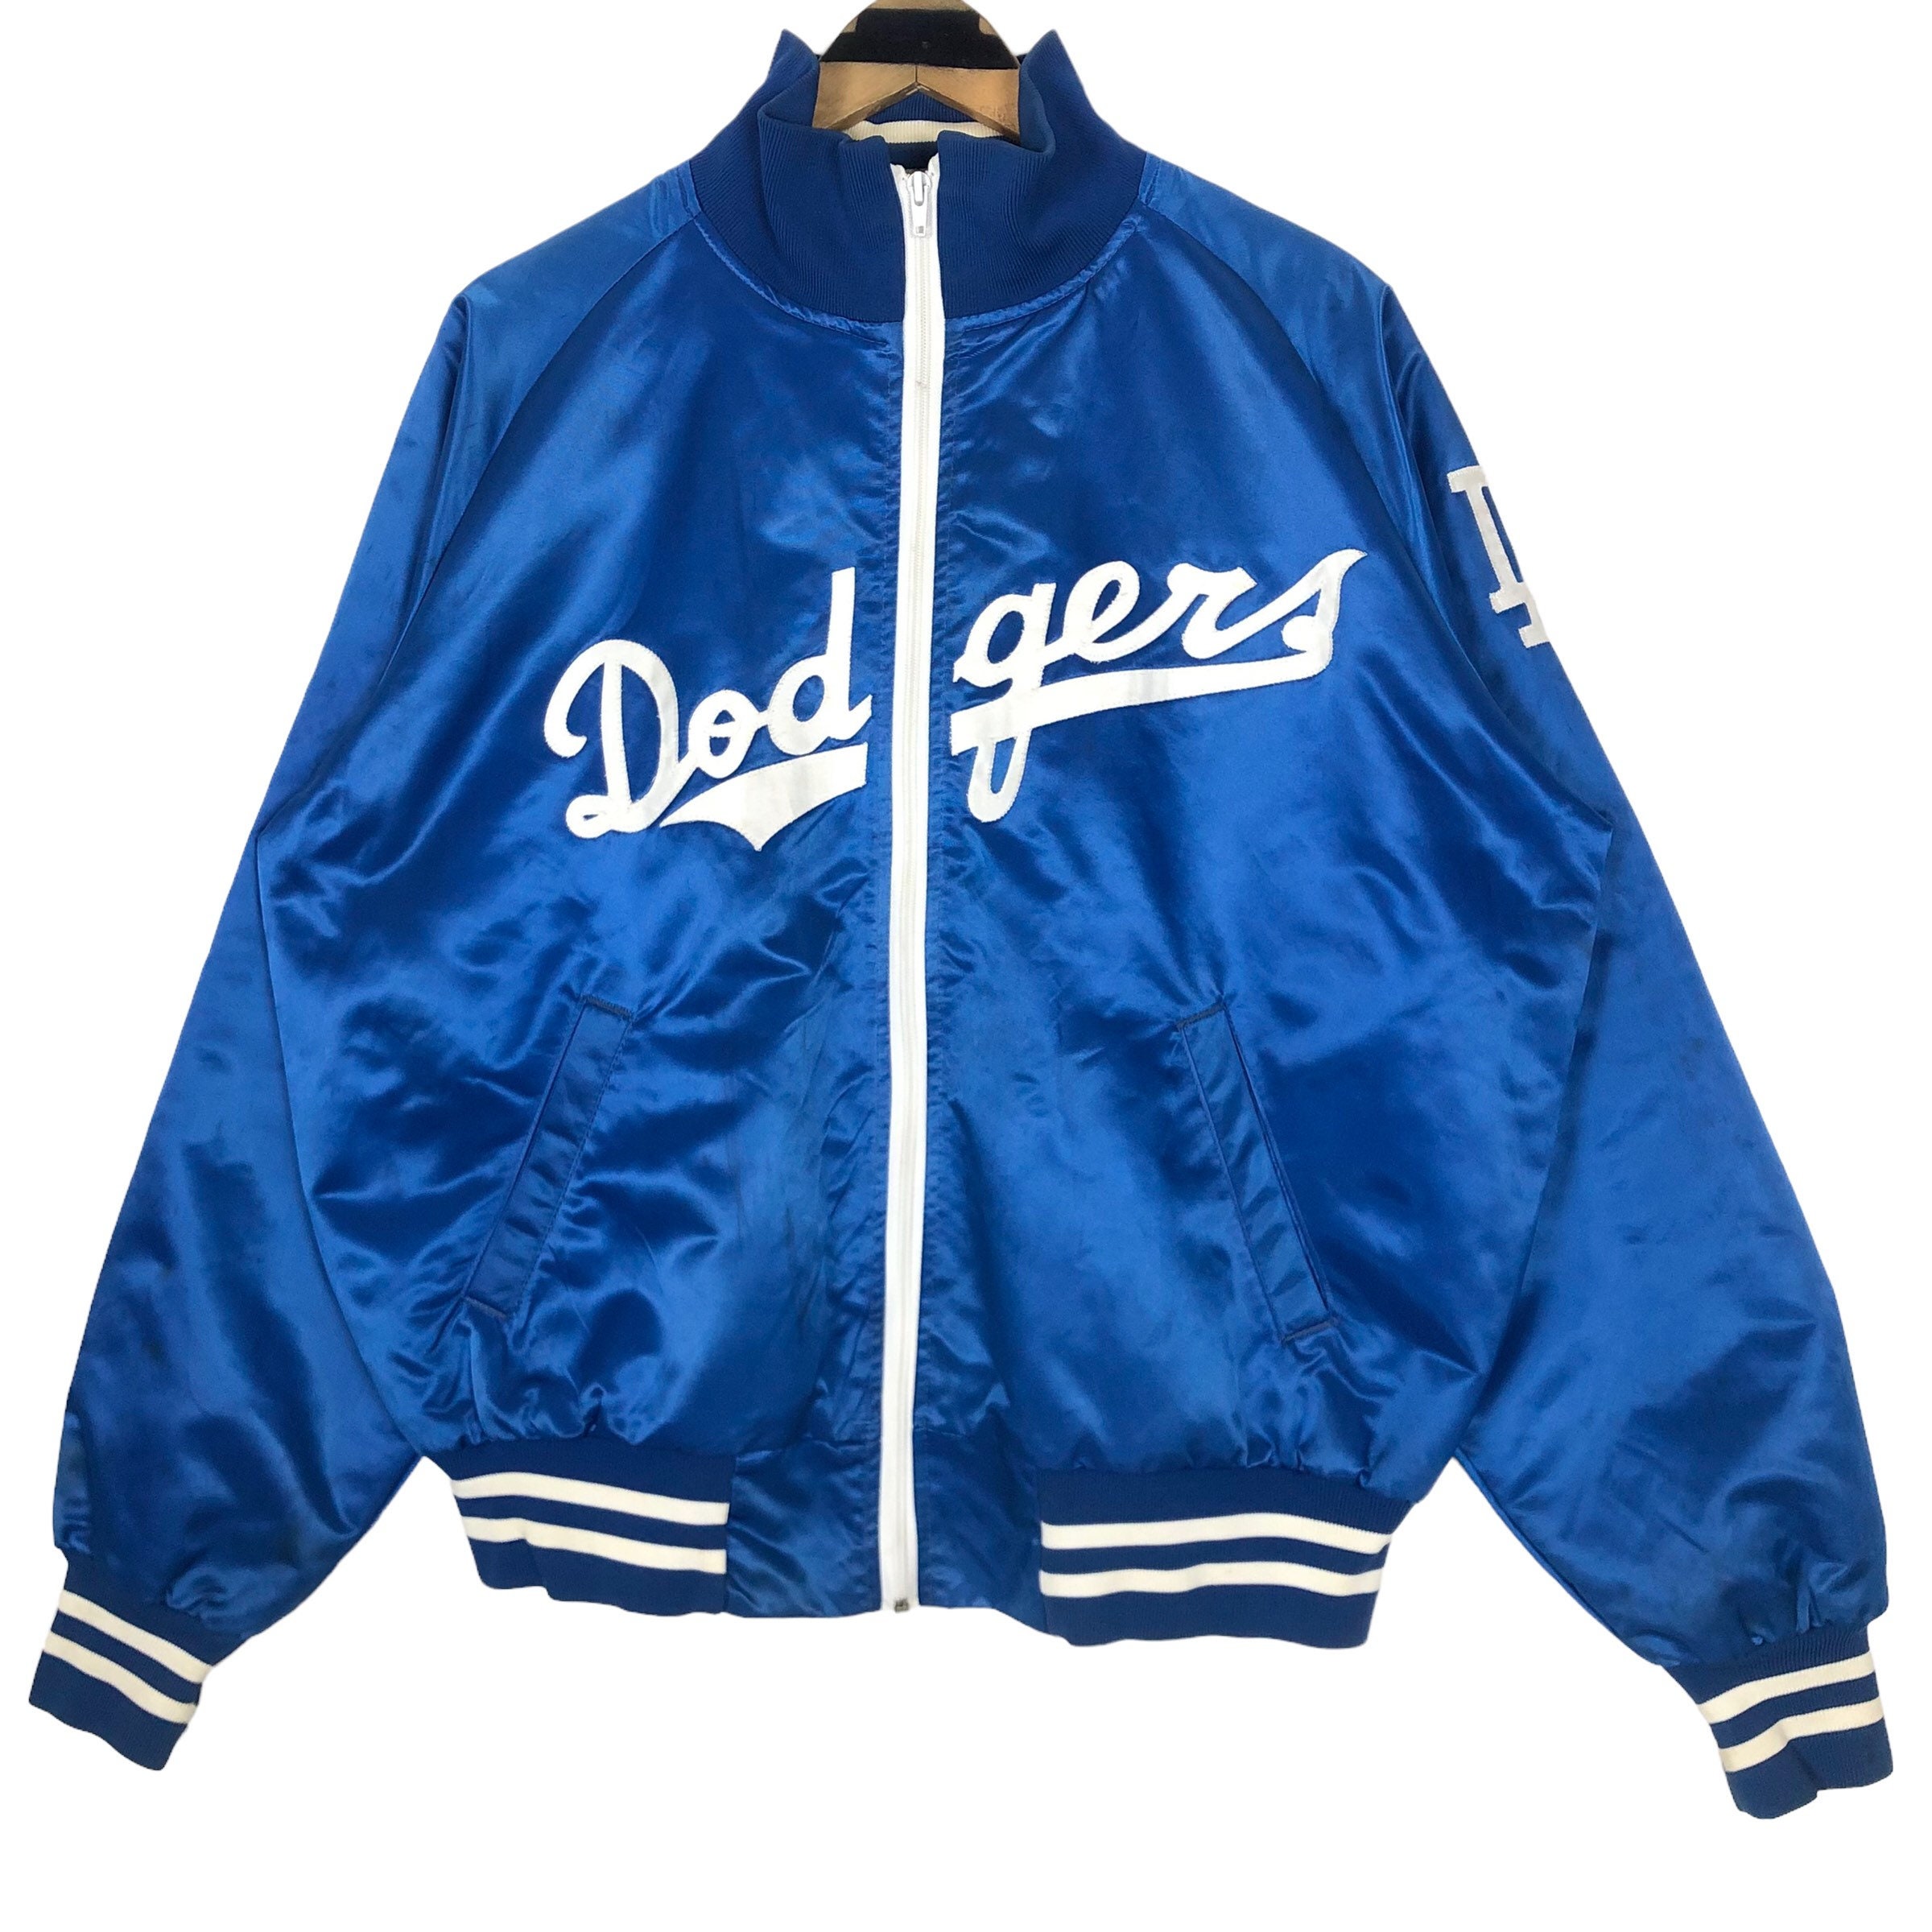 Vintage Starter Los Angeles Dodgers Baseball Jacket Royal Blue Small, Vintage Online